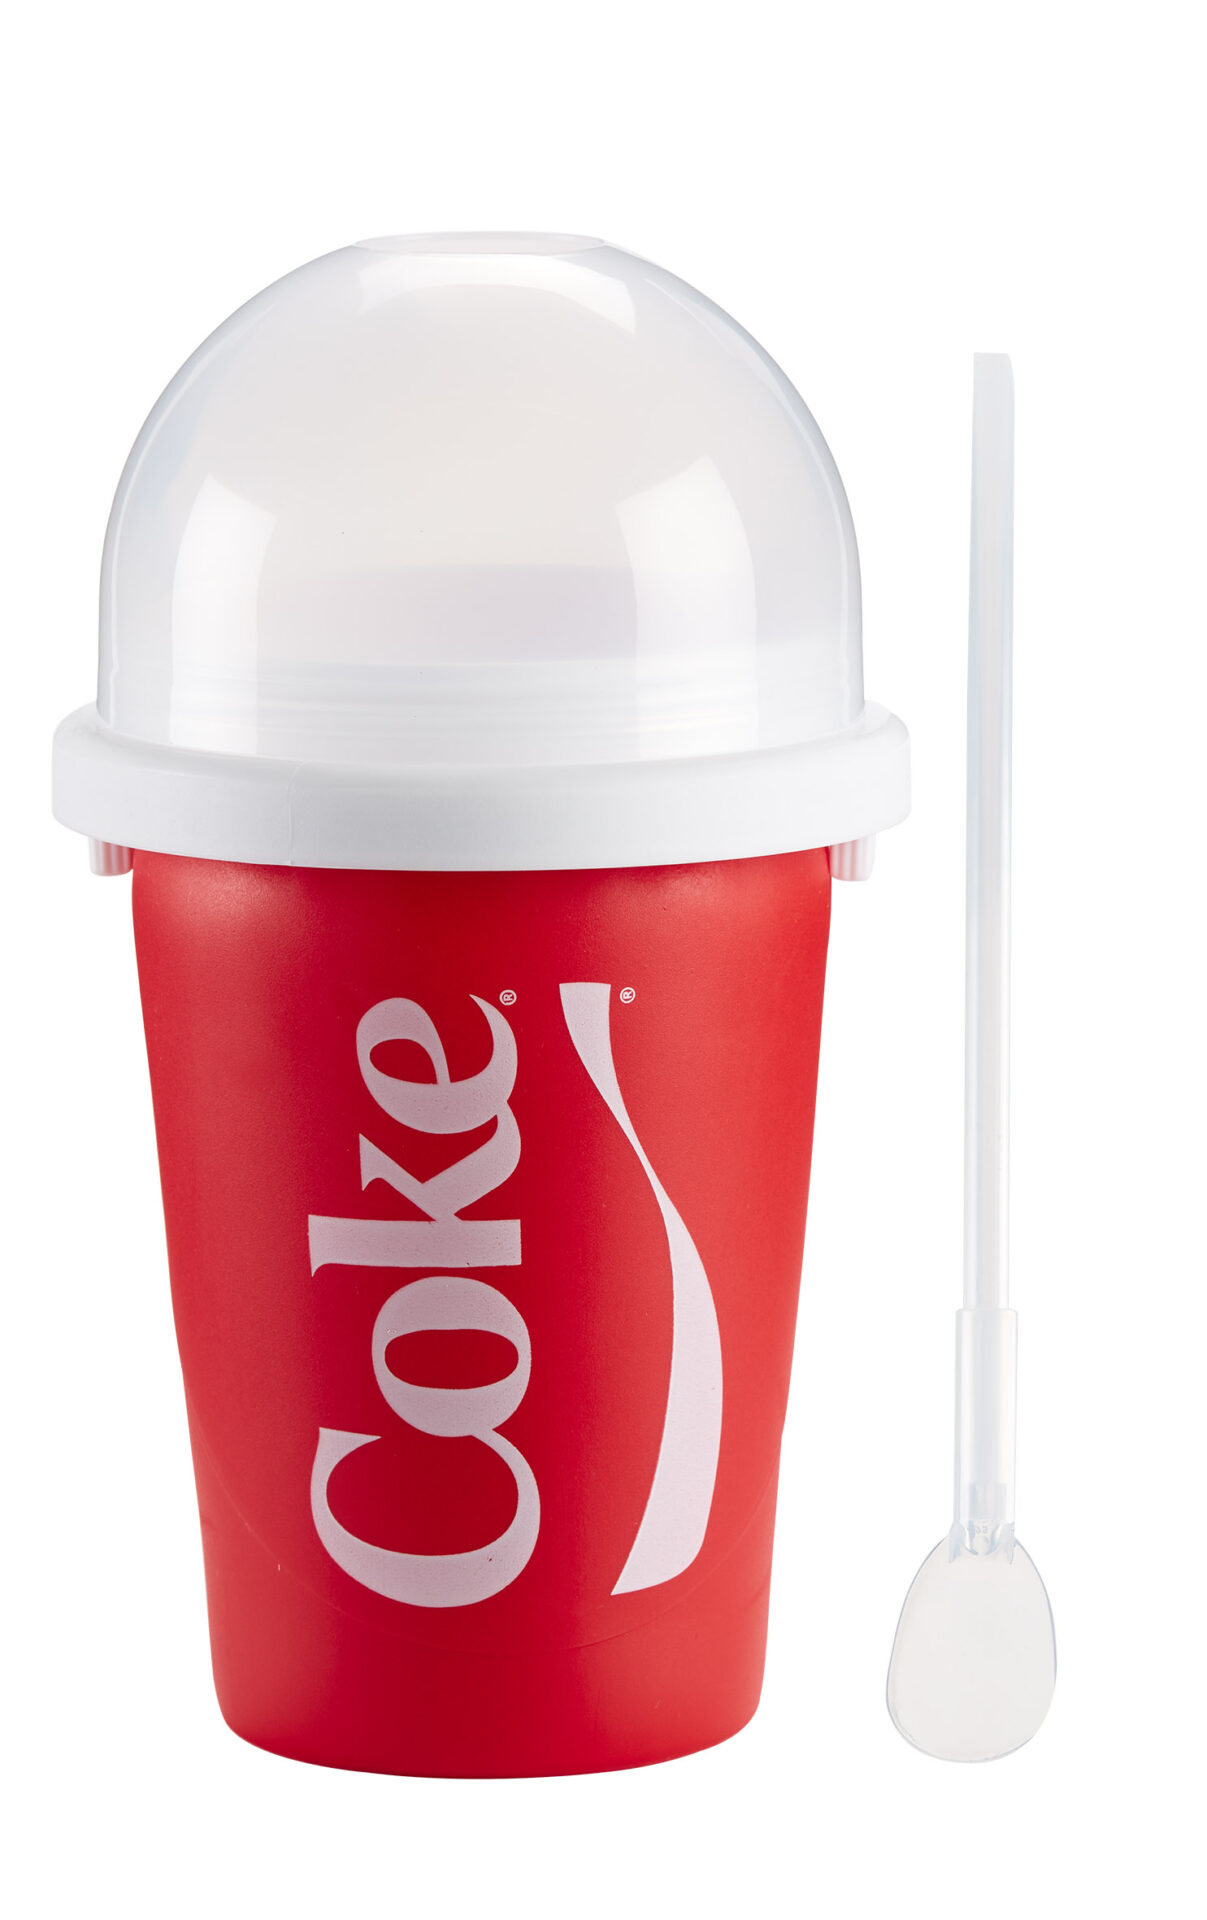 Chill Factor Coca-Cola Slushy Maker